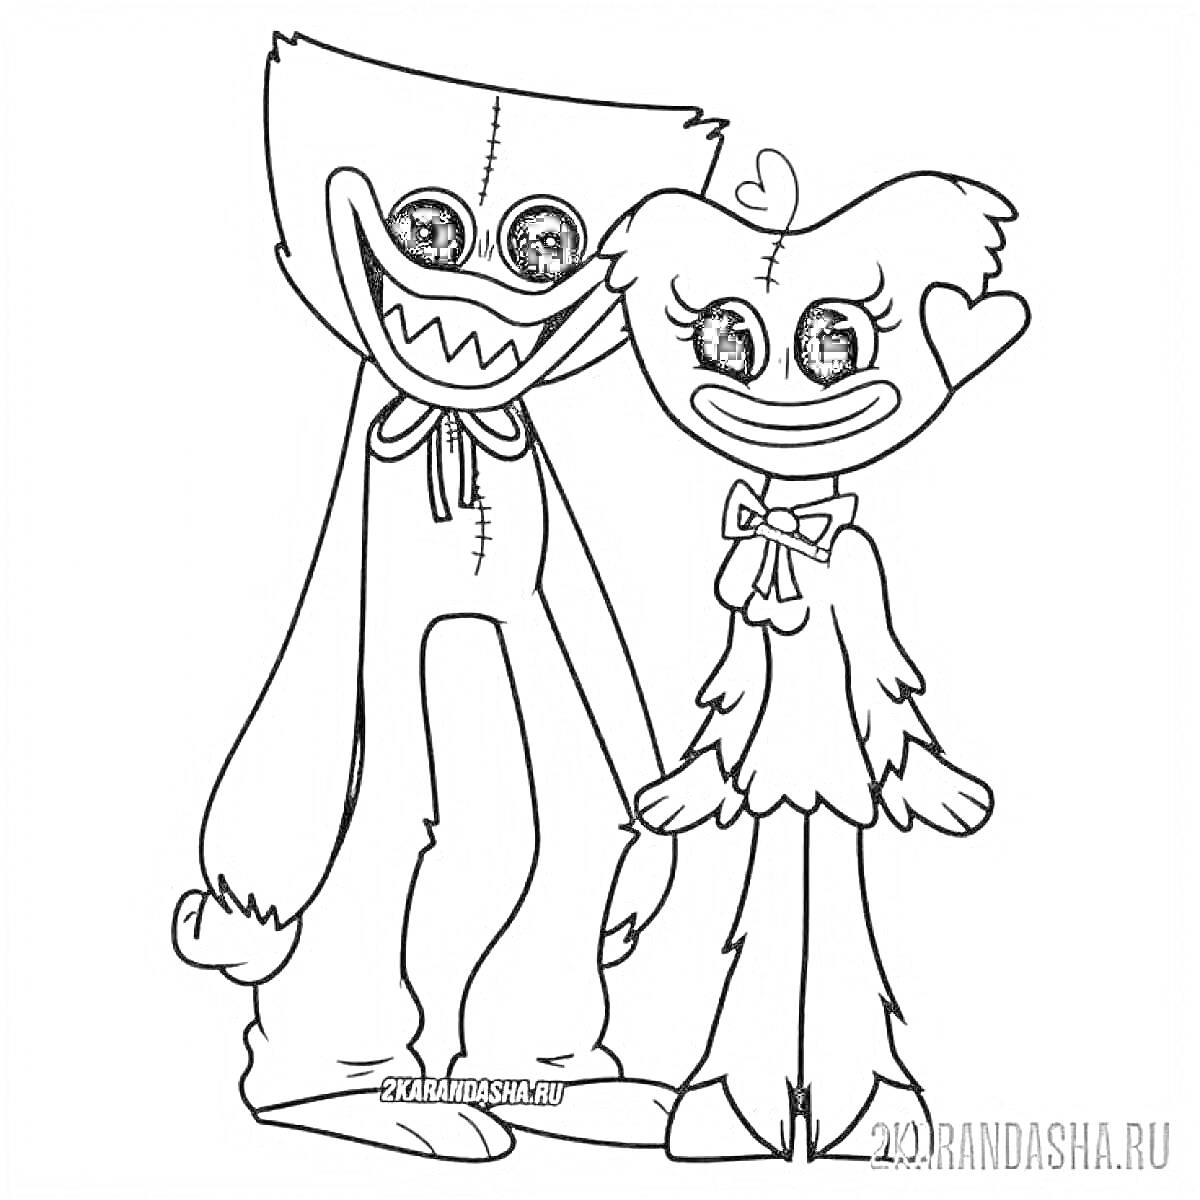 Раскраска Два персонажа (Кисси Мисси и Хагги Вагги) стоят рядом